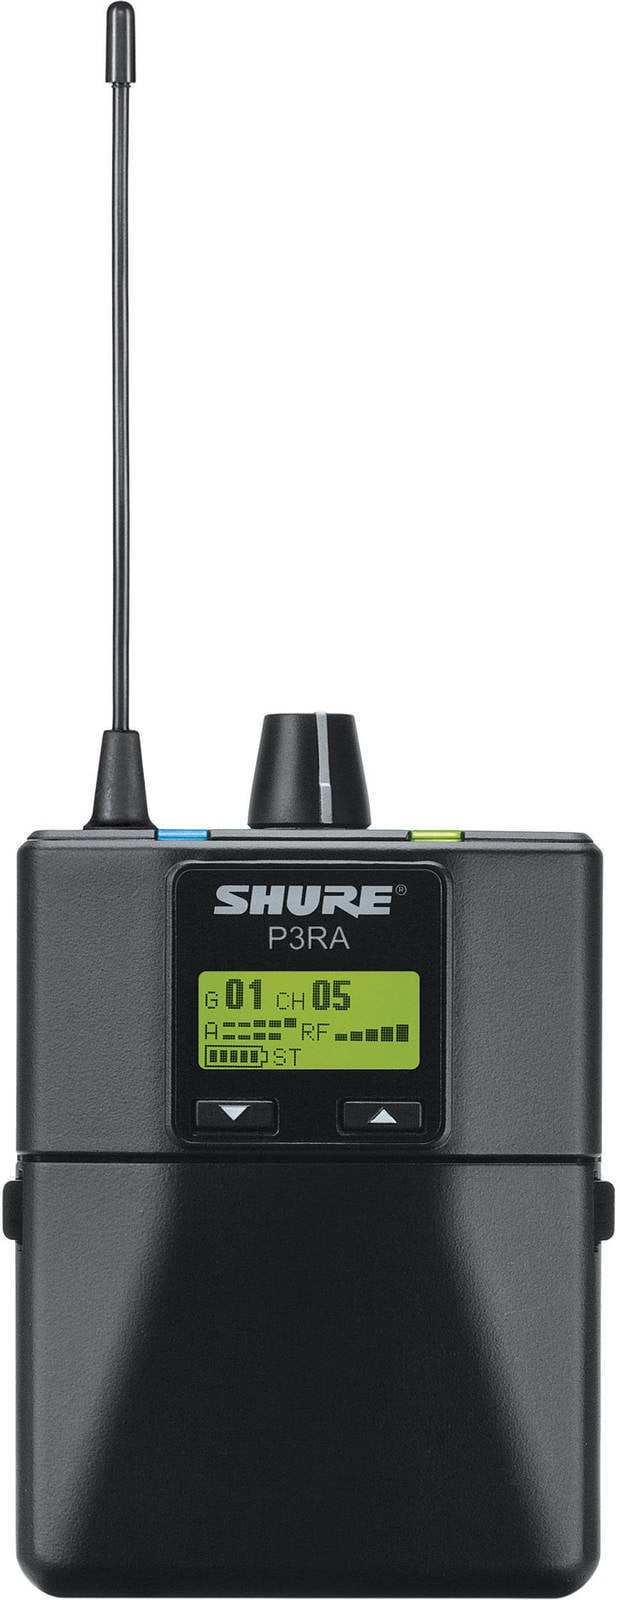 Komponenta za In-Ear sustave Shure P3RA-H20 - PSM 300 Bodypack Receiver H20: 518–542 MHz